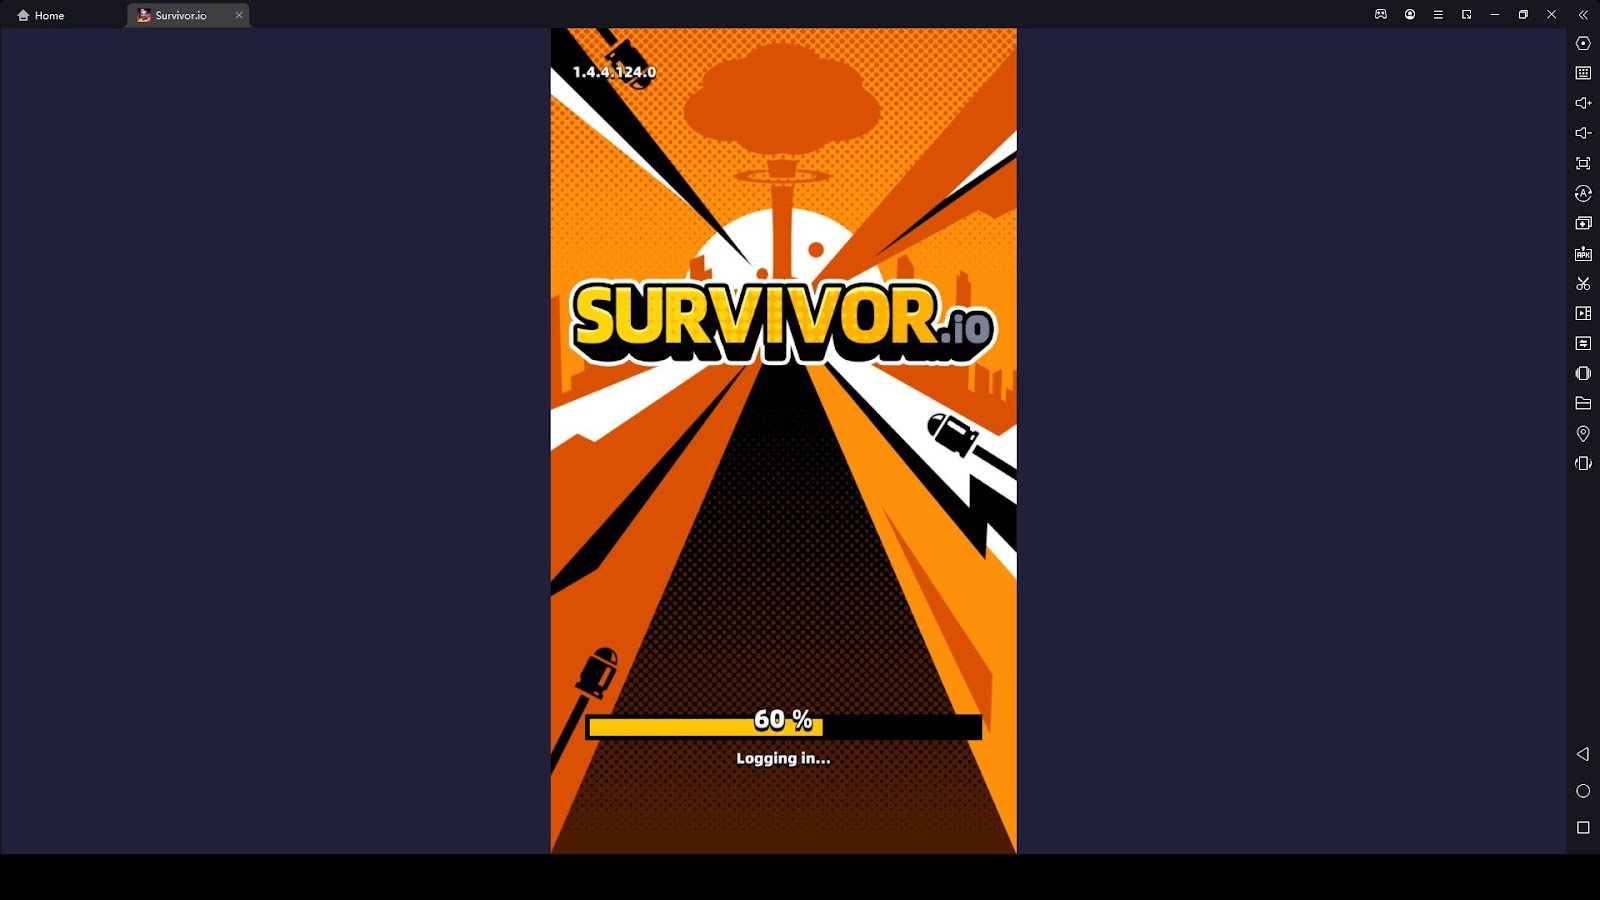 Survivor.io - Best SetUp